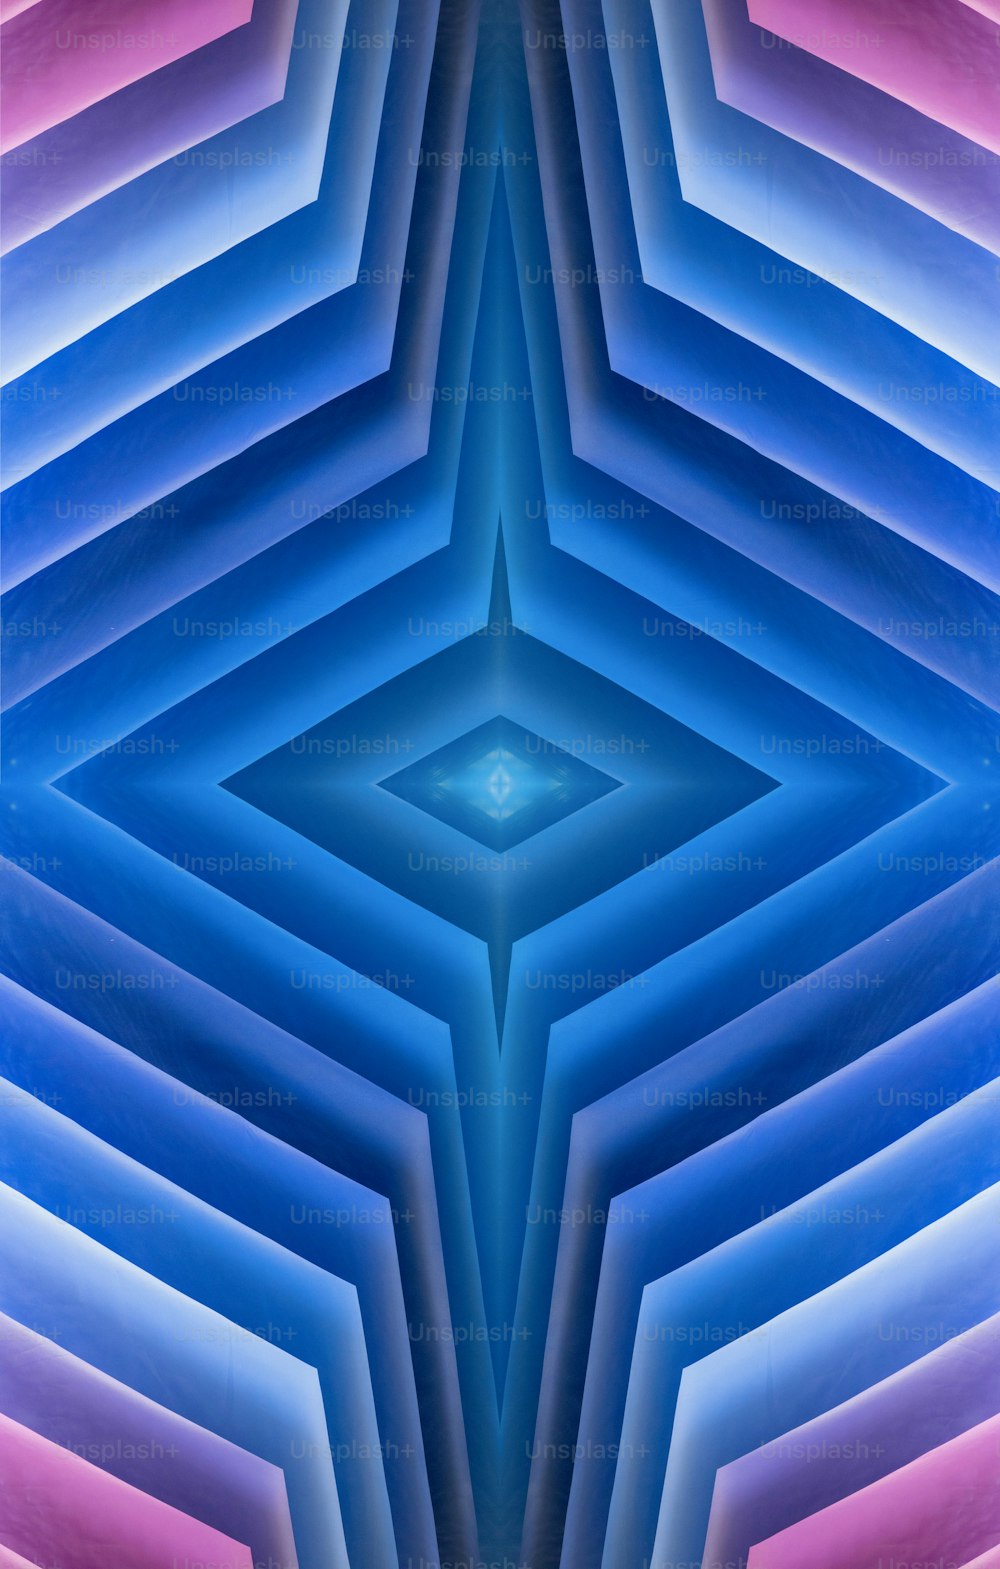 une image générée par ordinateur d’une structure semblable à une étoile